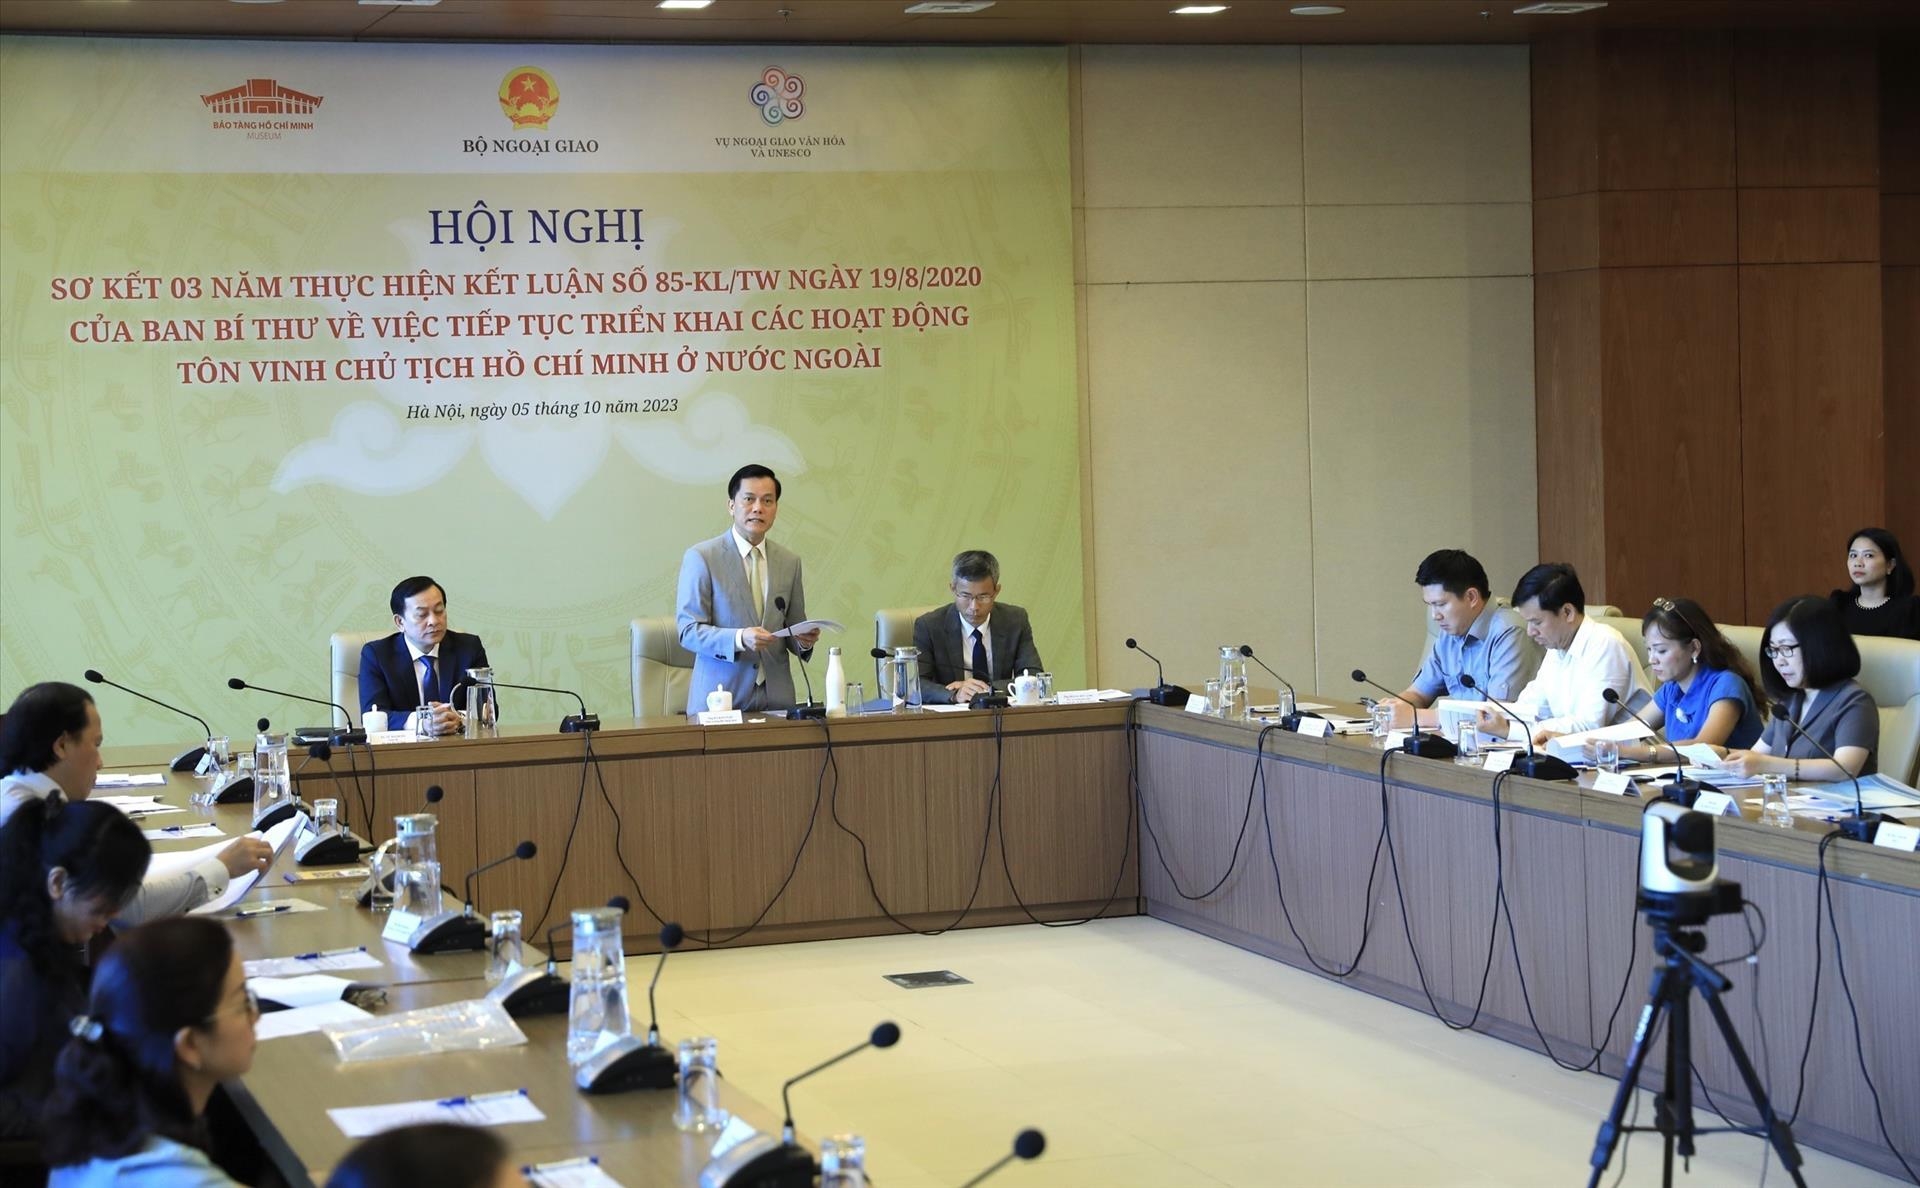 越南外交部副部长、越南联合国教科文组织国家委员会主席何金玉在会上发表讲话。